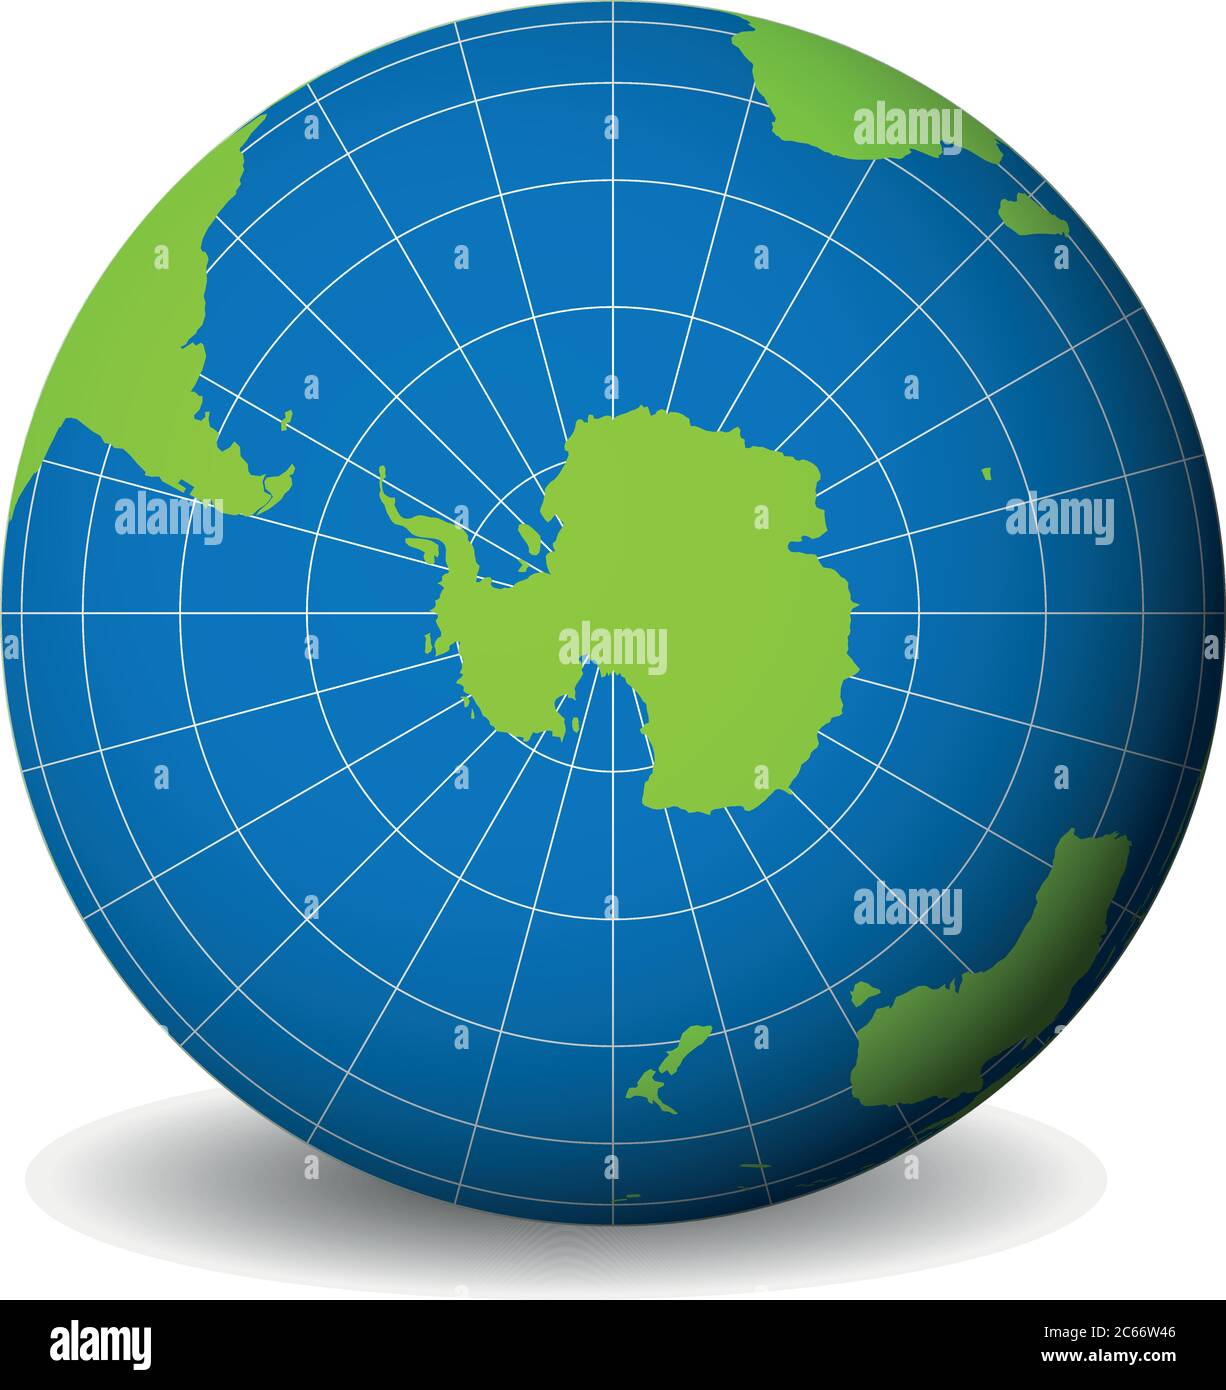 Erdkugel mit grüner Weltkarte und blauen Meeren und Ozeanen mit Südpol auf Antarktis fokussiert. Mit dünnen weißen Meridianen und Parallelen. 3D-Vektordarstellung. Stock Vektor